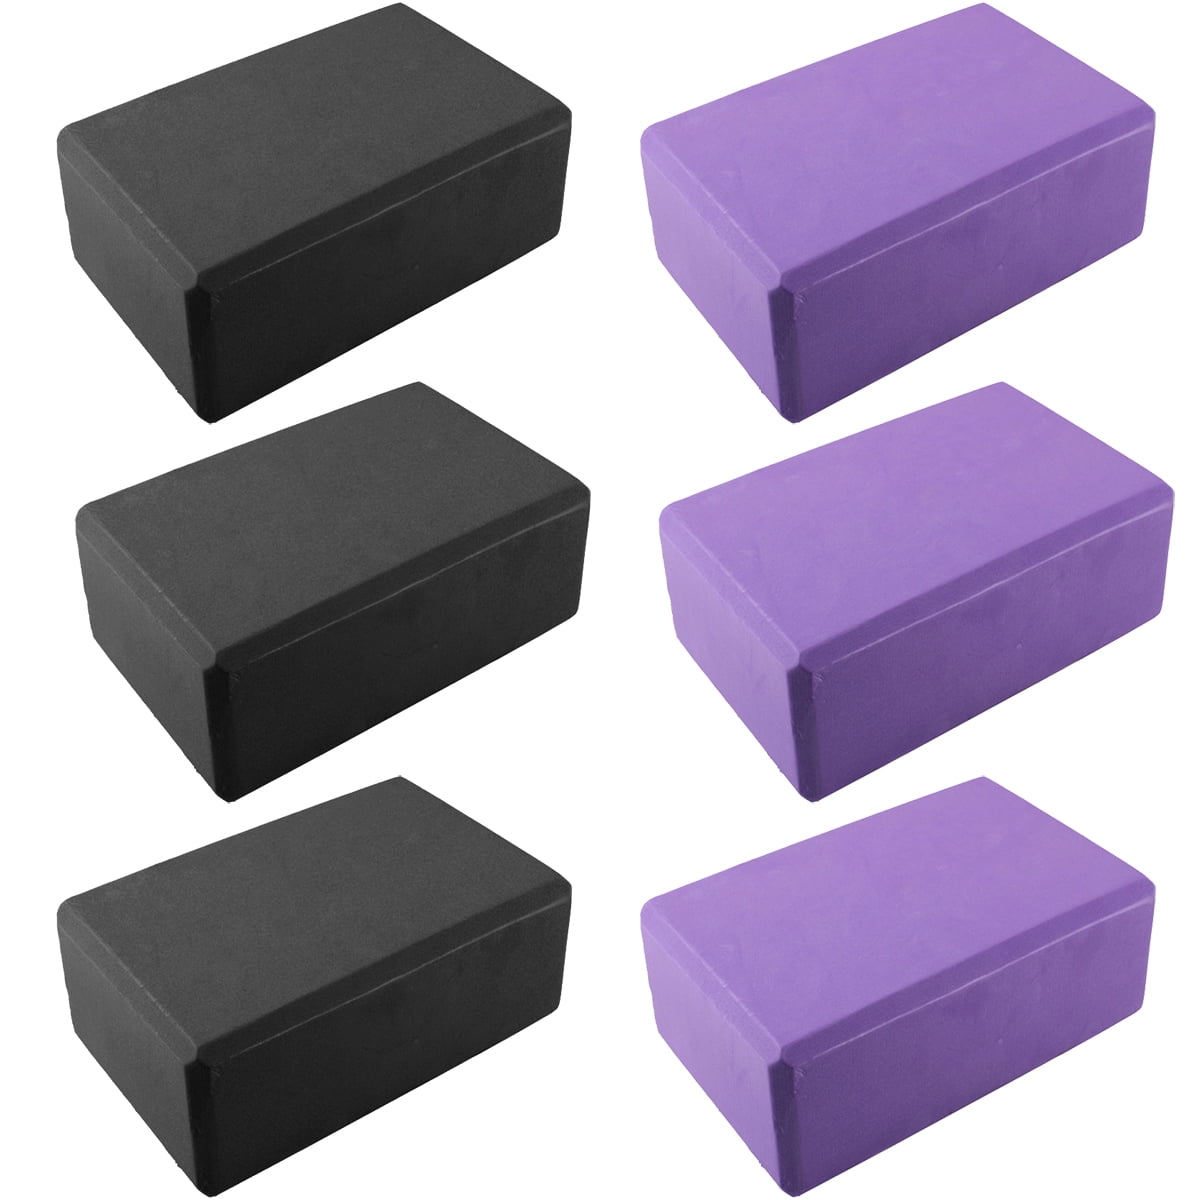 eva foam blocks